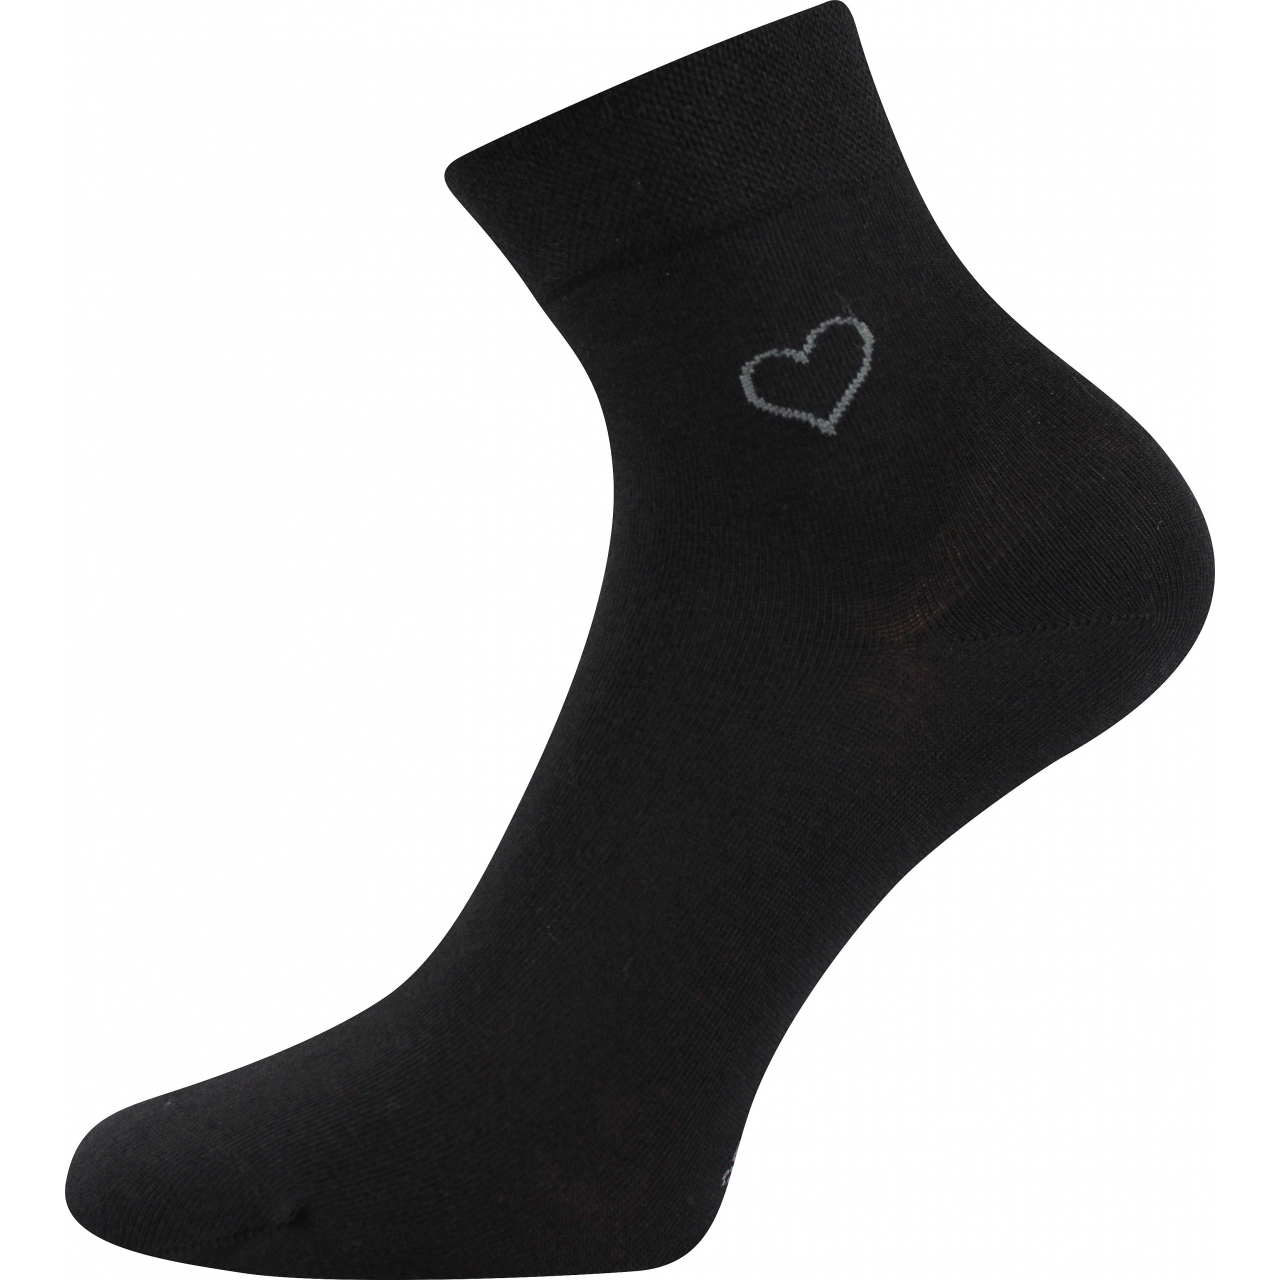 Ponožky elegantní dámské Lonka Filiona - černé, 35-38